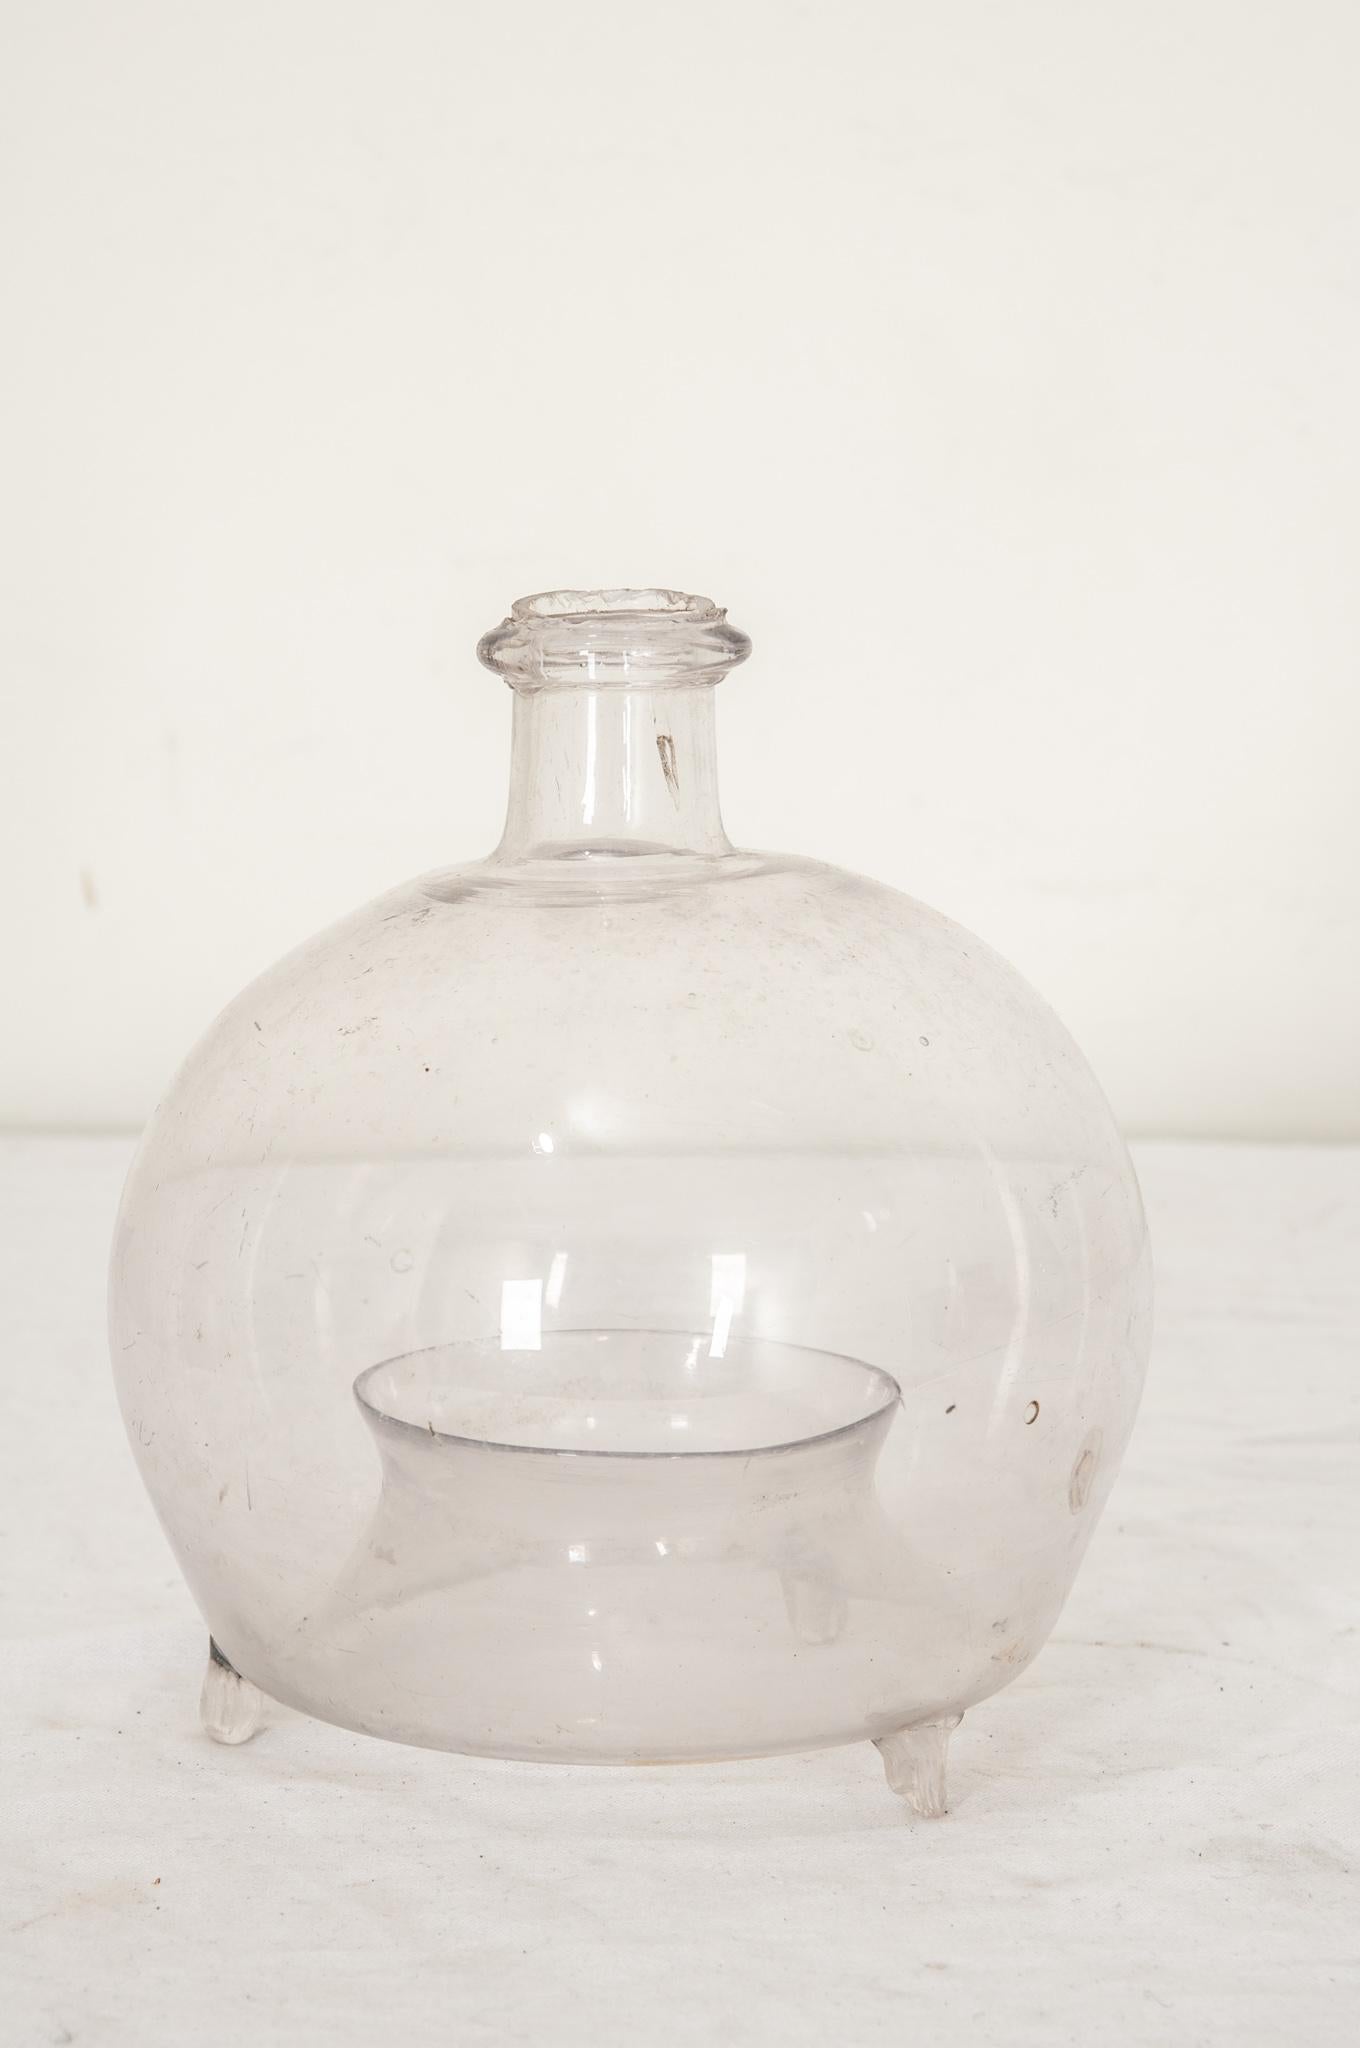 Un attrape-mouches unique en verre soufflé à la main, originaire de France, vers 1880. Une belle forme. Le bassin situé au bas du dôme est destiné à être rempli d'une petite quantité de solution d'eau sucrée pour que les mouches puissent s'y piéger.